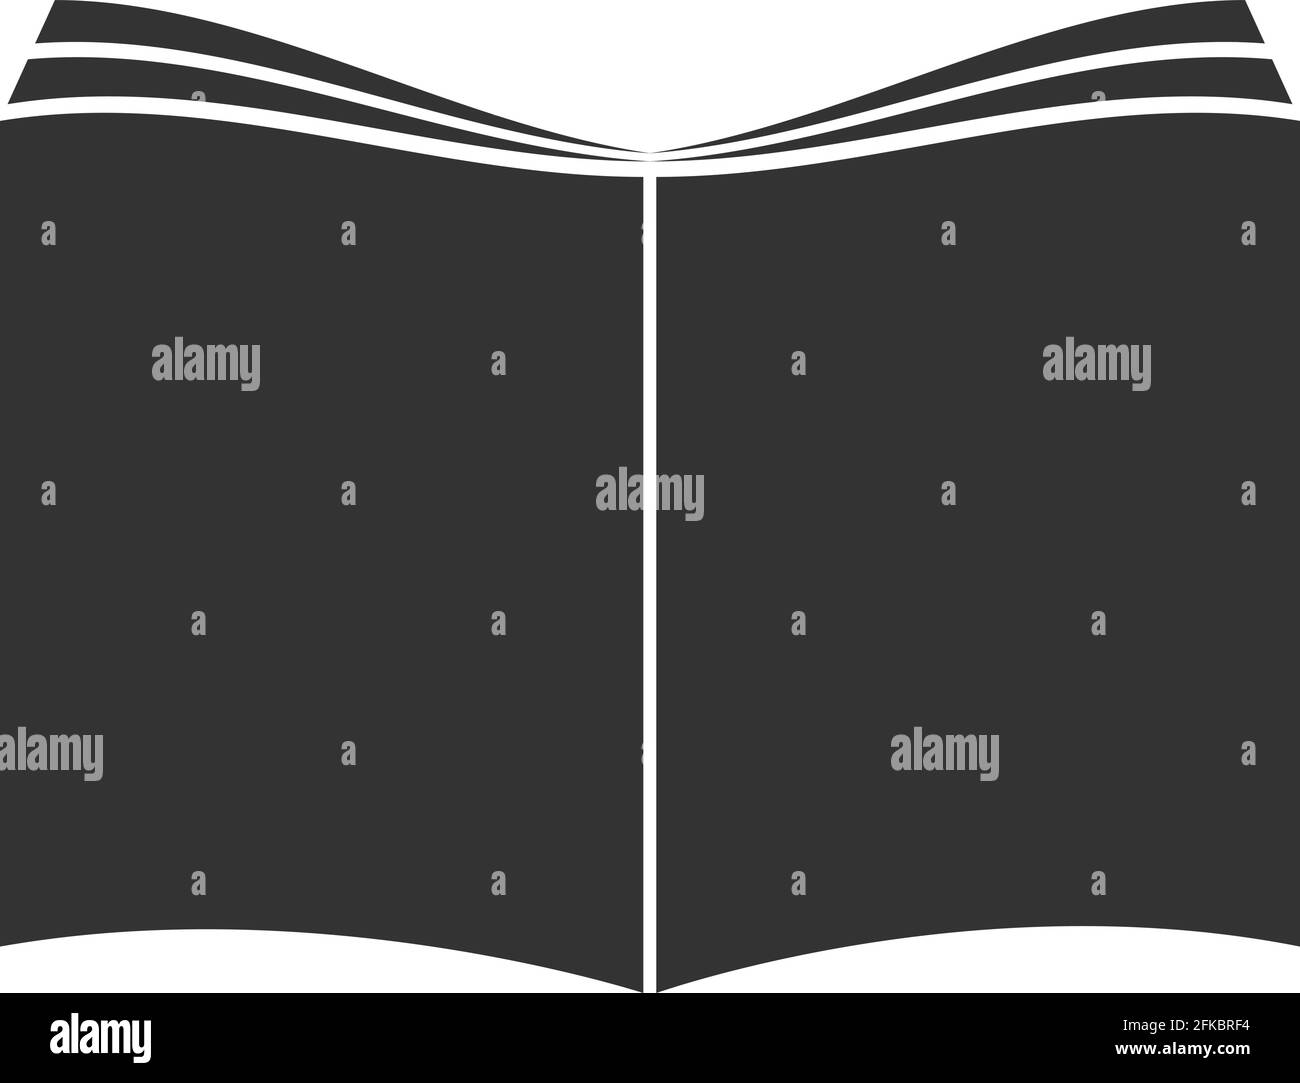 Einfaches schwarzes offenes Buch- oder Zeitschriftensymbol oder Symbolvektor Abbildung Stock Vektor